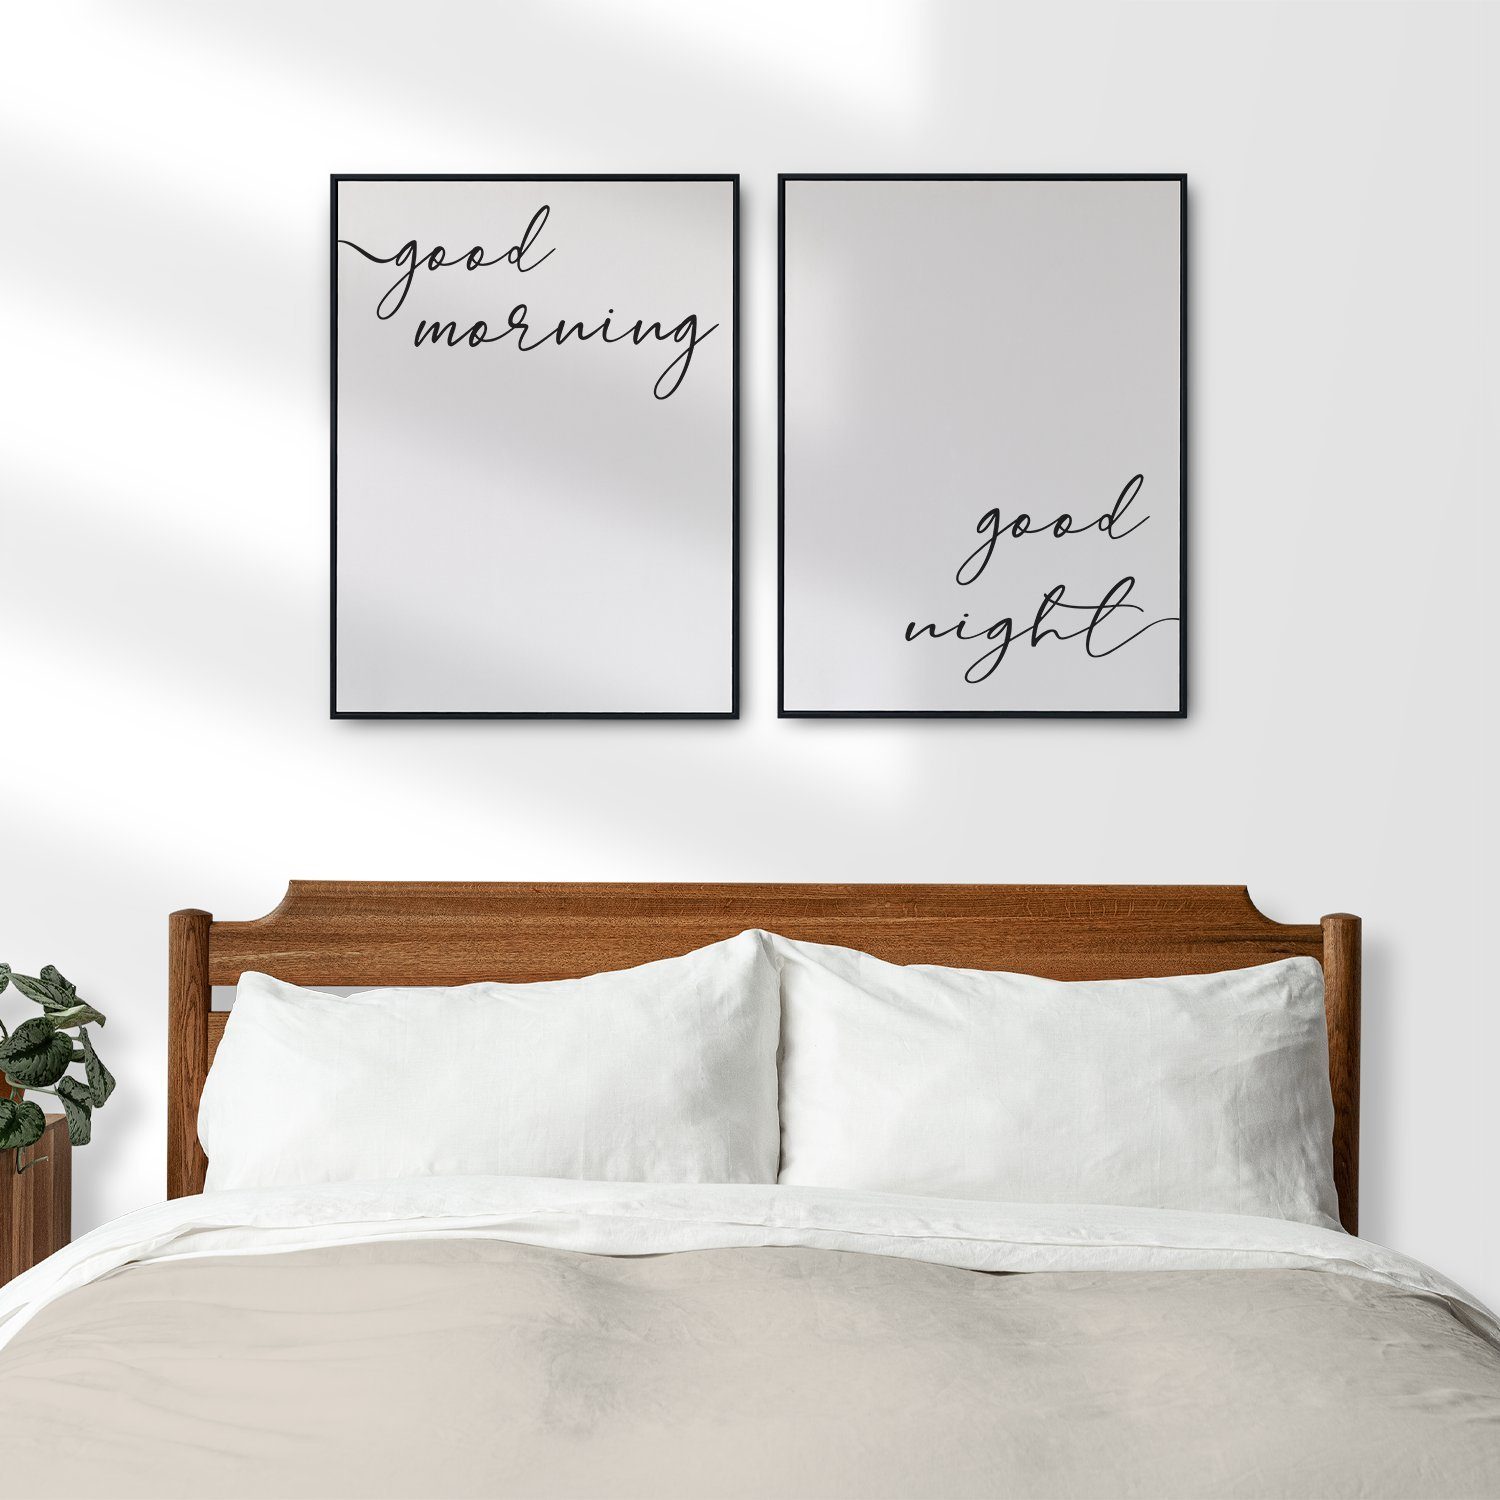 Wandbild Set 2er Night Schlafzimmer Morning Poster - Good Tigerlino Wanddeko Good Bett